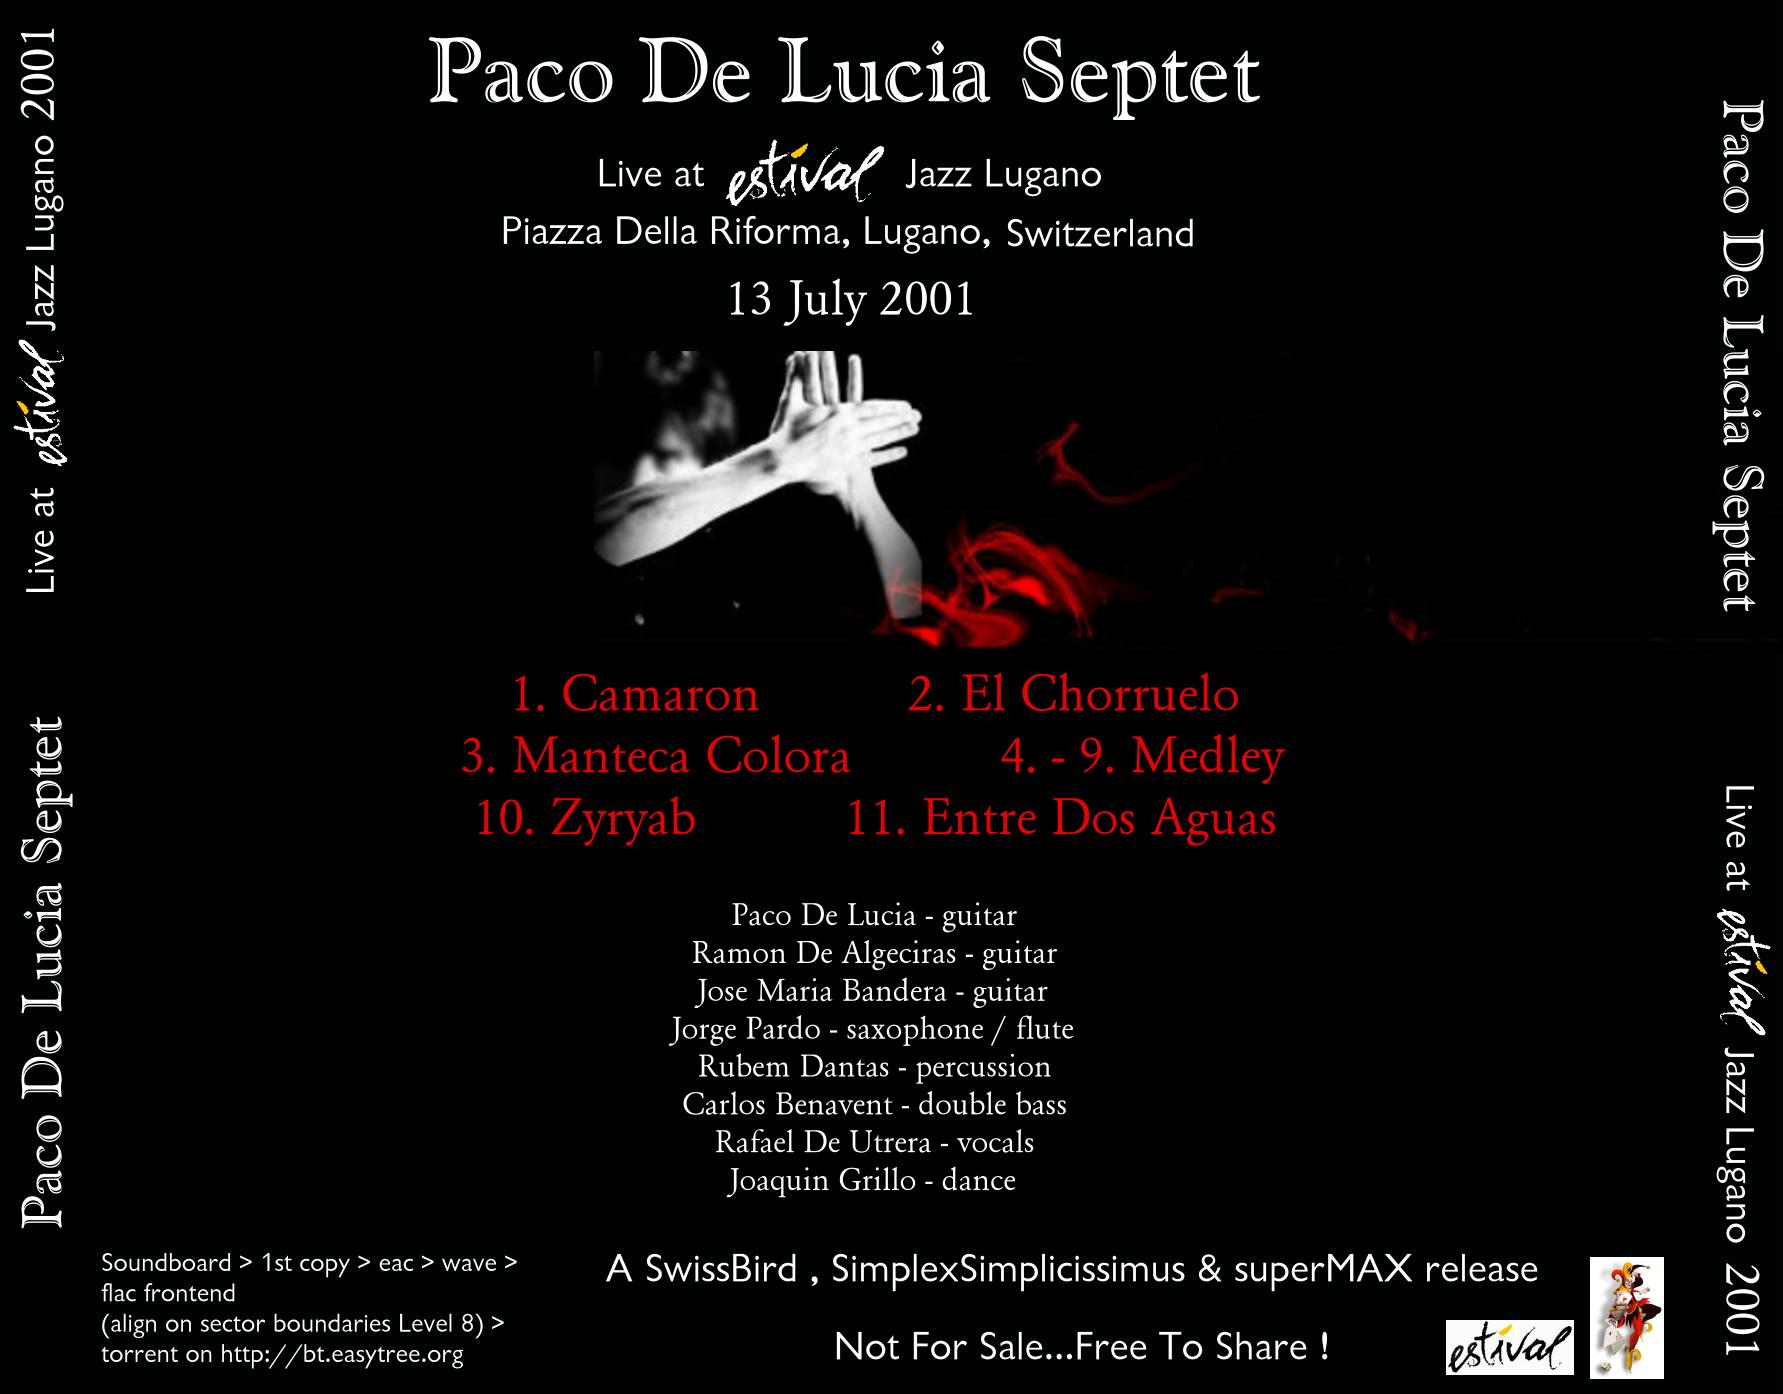 PacoDeLuciaSeptet2001-07-13EstivalJazzLuganoSwitzerland (1).JPG